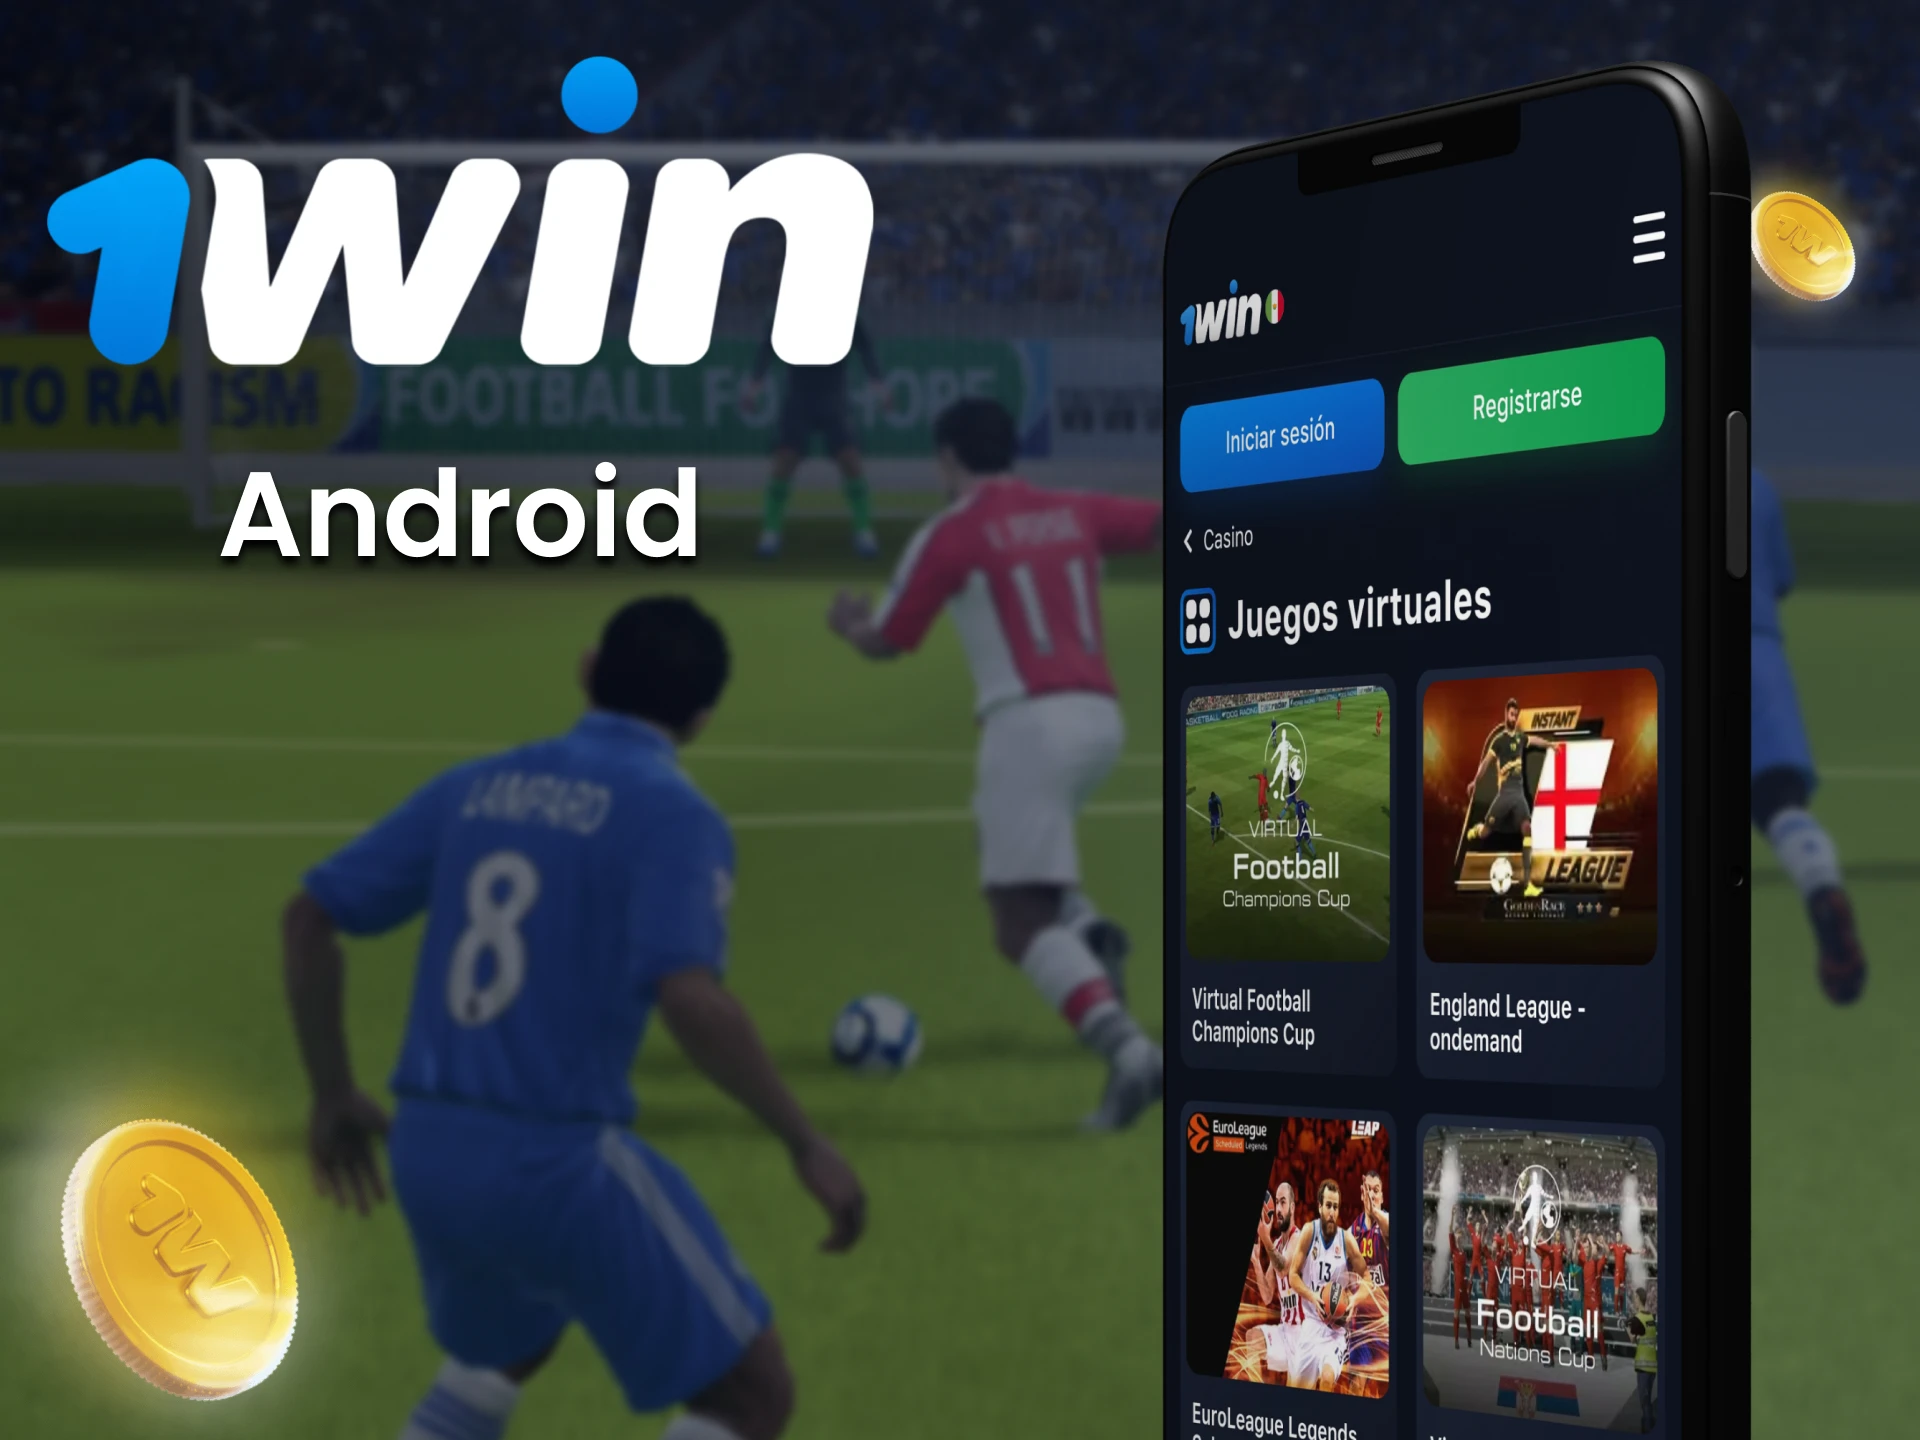 Haz apuestas en deportes virtuales a través de la aplicación 1win para Android.